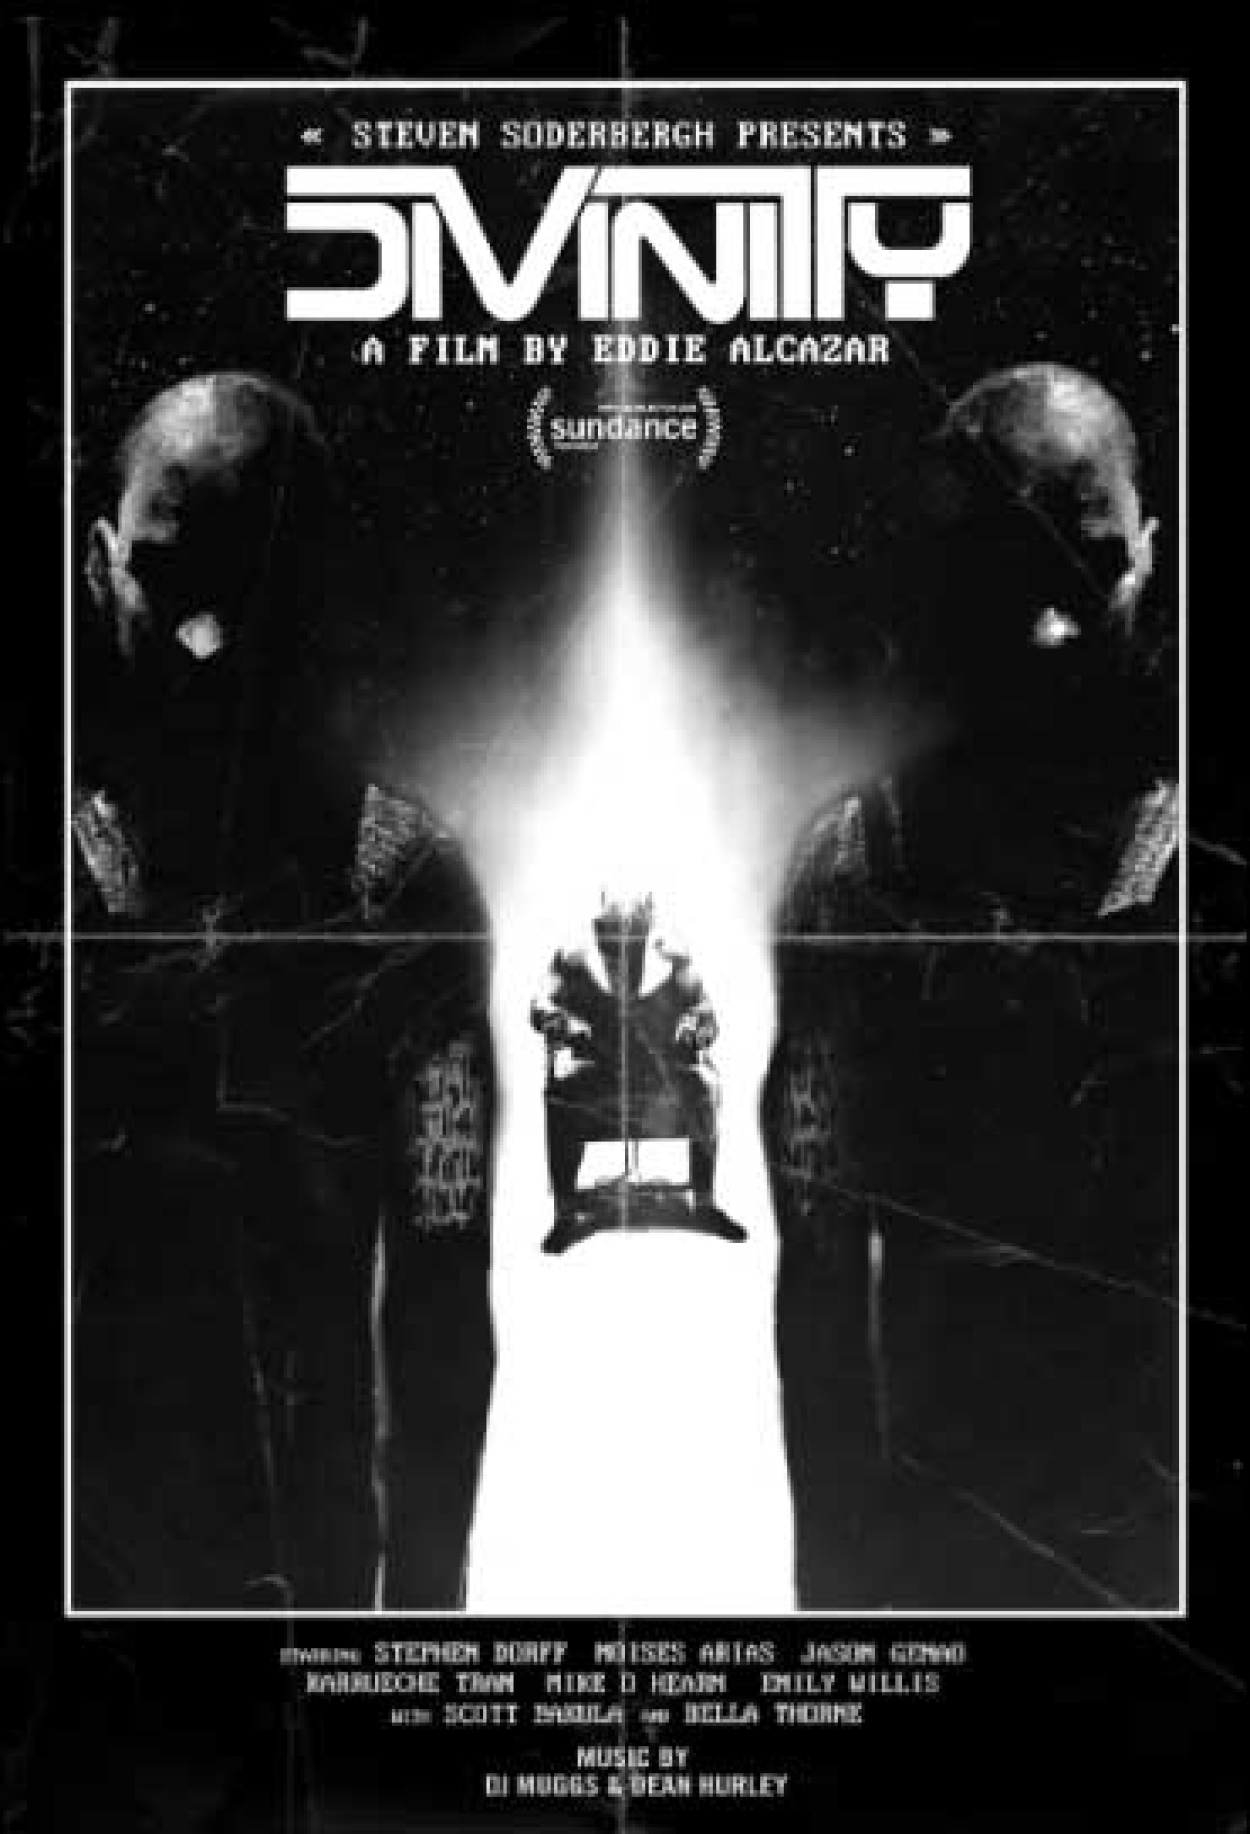 John Wick 5 (Filme), Trailer, Sinopse e Curiosidades - Cinema10